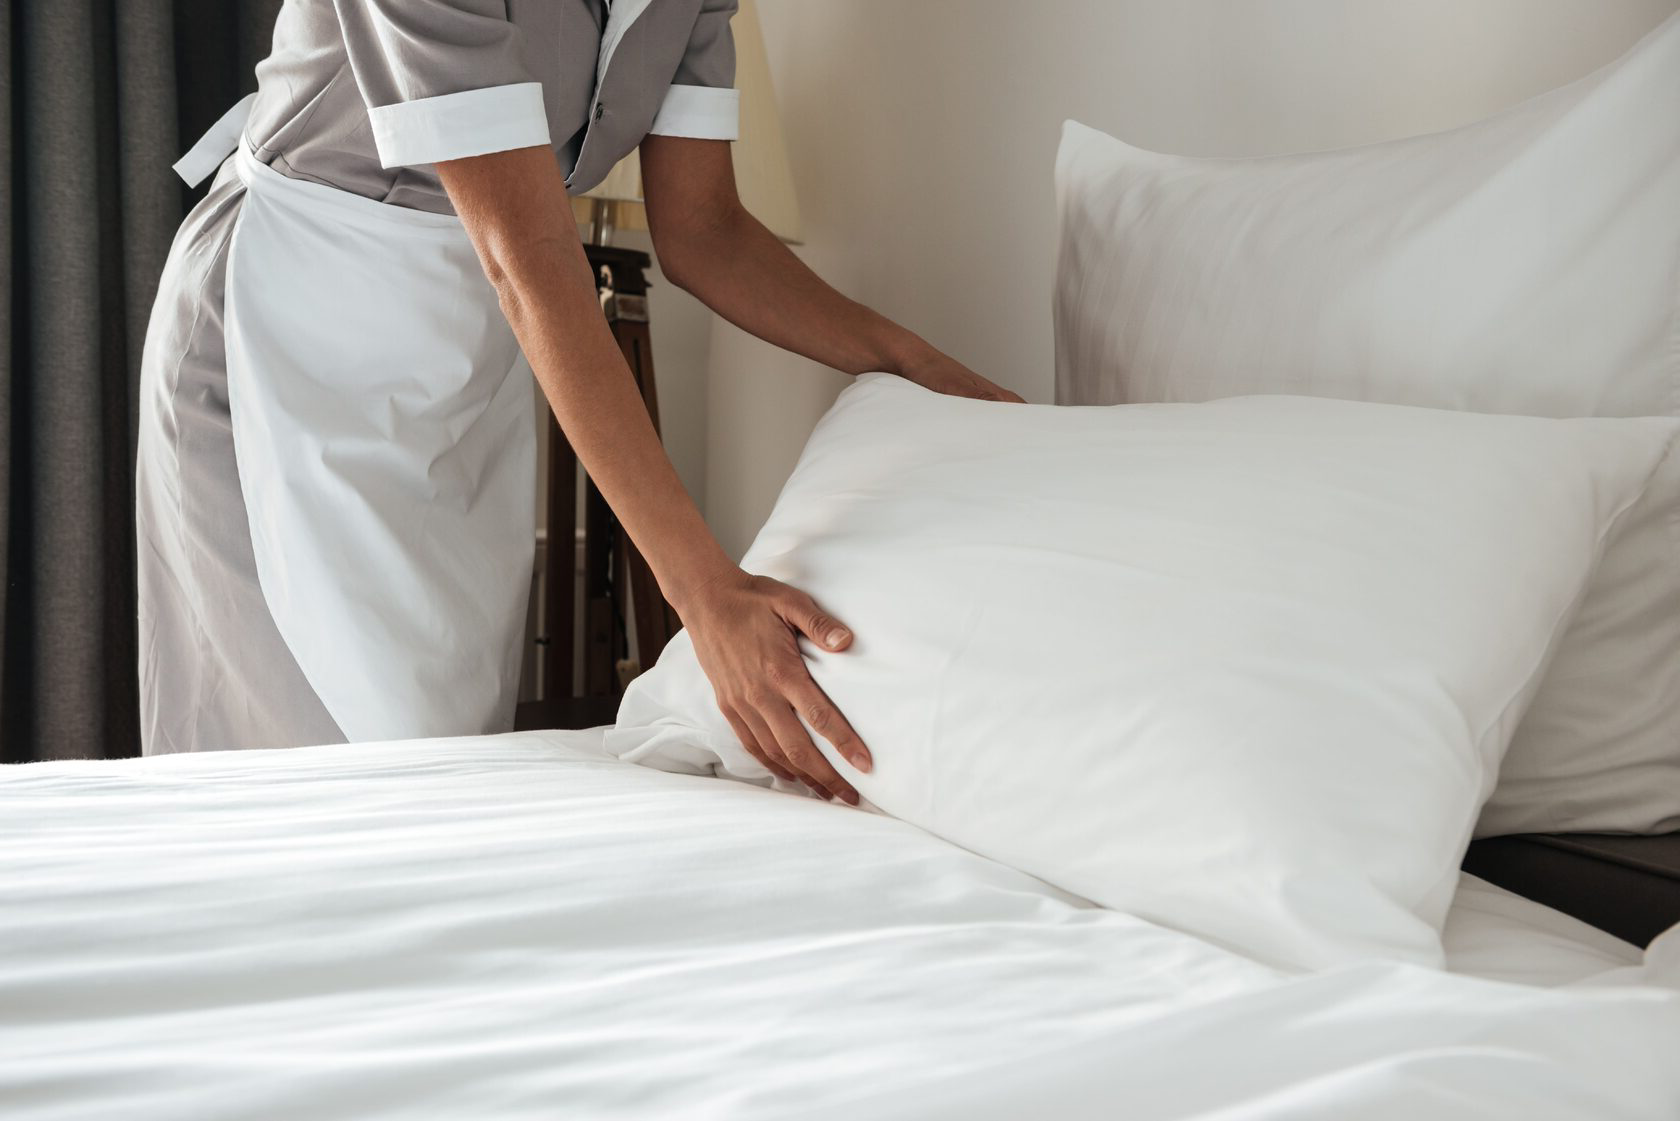 Подготовка постели. Хаускипинг Роом. Заправленная кровать в отеле. Застеленная кровать. Заправленная постель в гостинице.